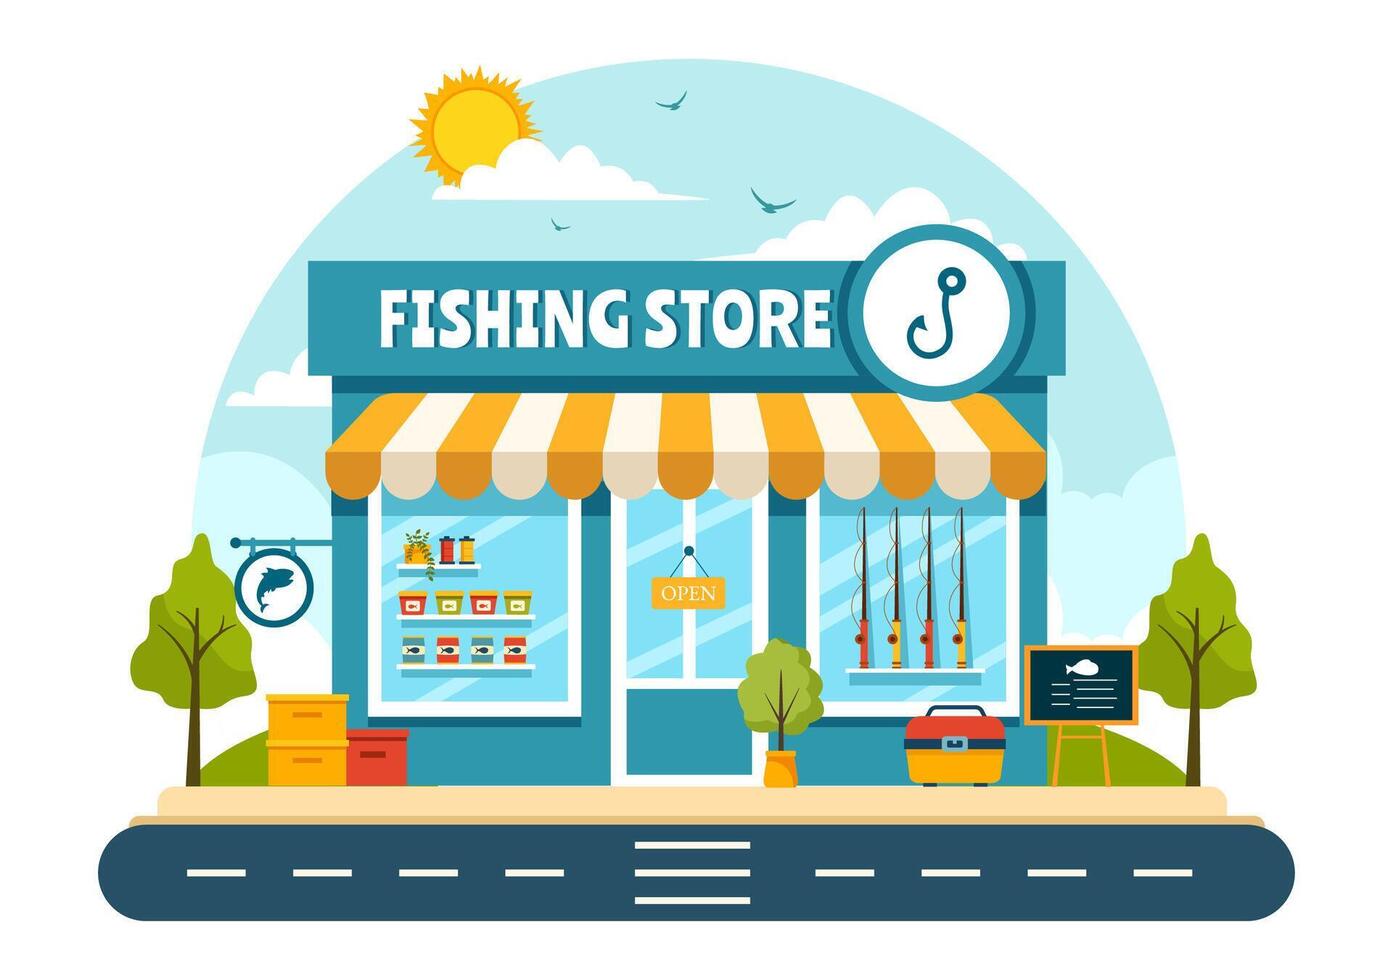 pesca memorizzare vettore illustrazione con vendita vario pesca attrezzatura, esca, pesce attraente Accessori o elementi su piatto cartone animato sfondo